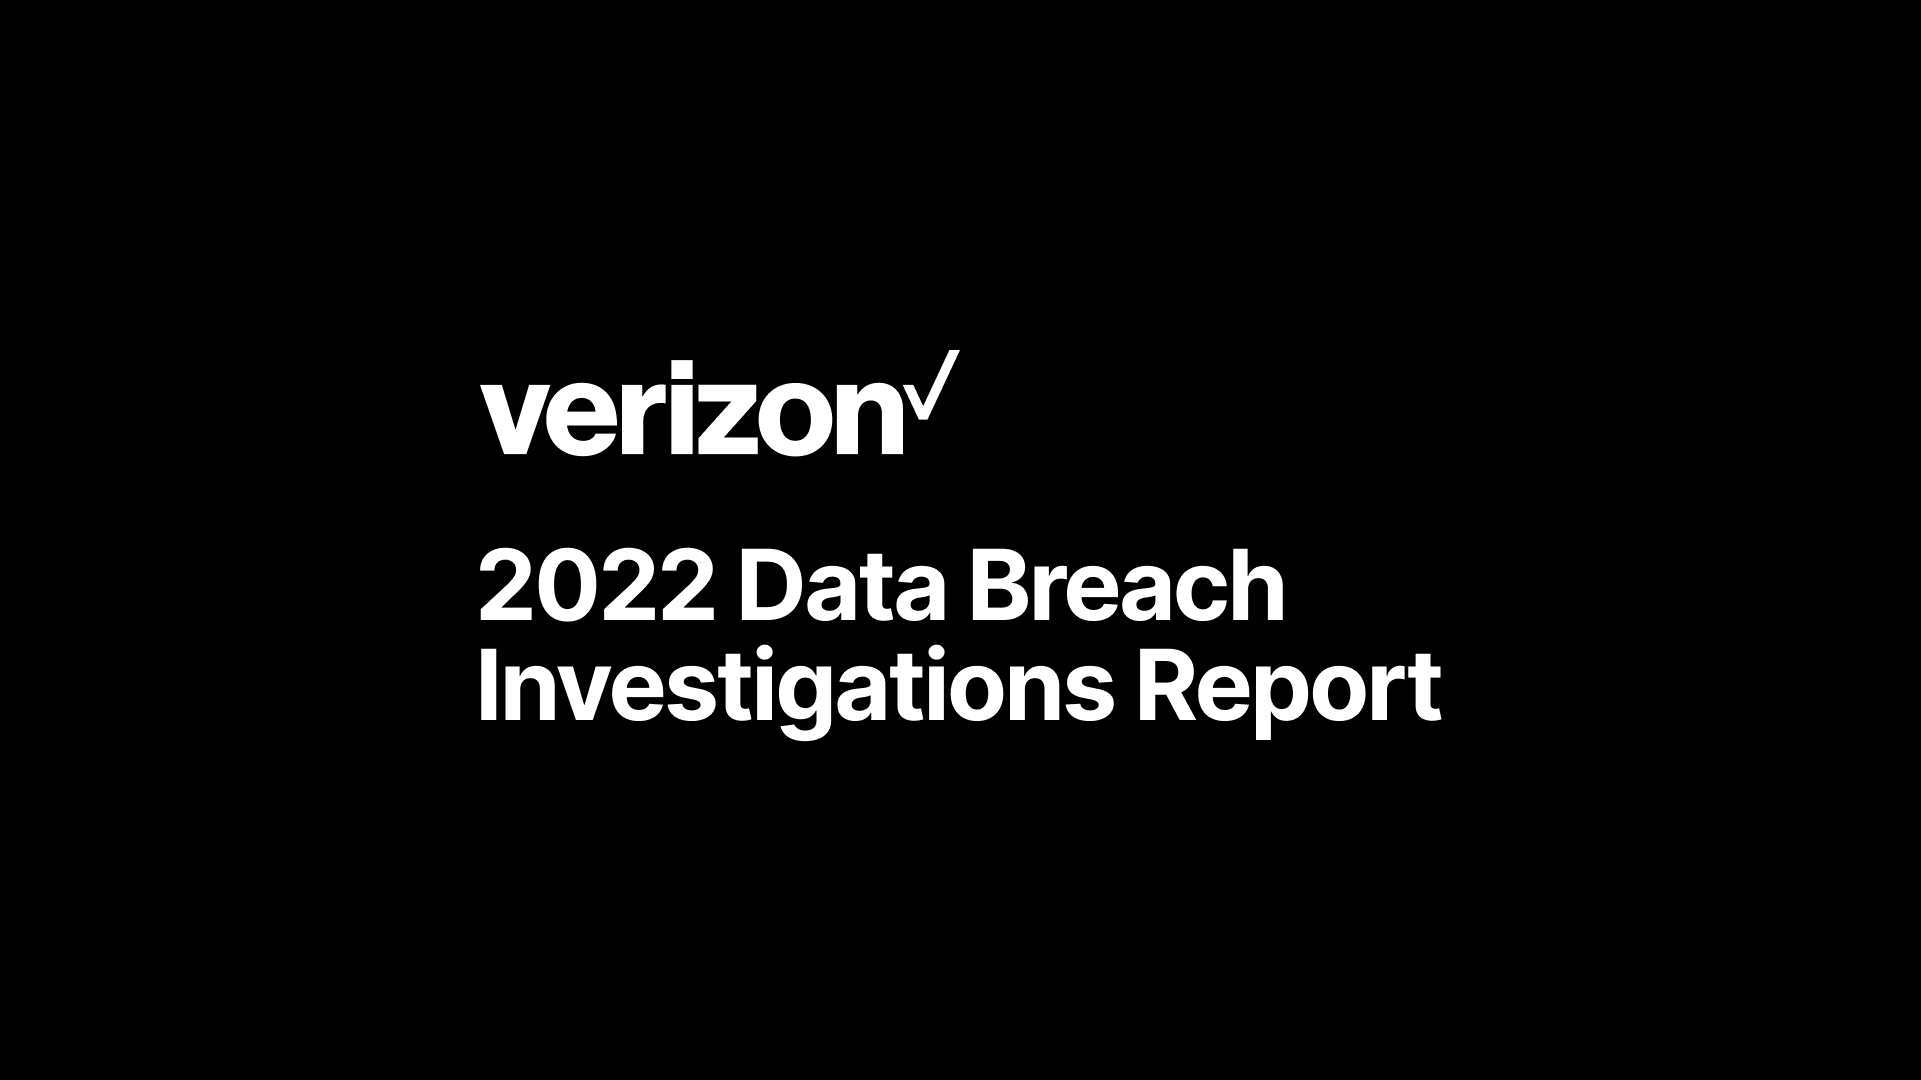 The Strategic Impact of Verizon's 2022 Data Breach Investigations Report